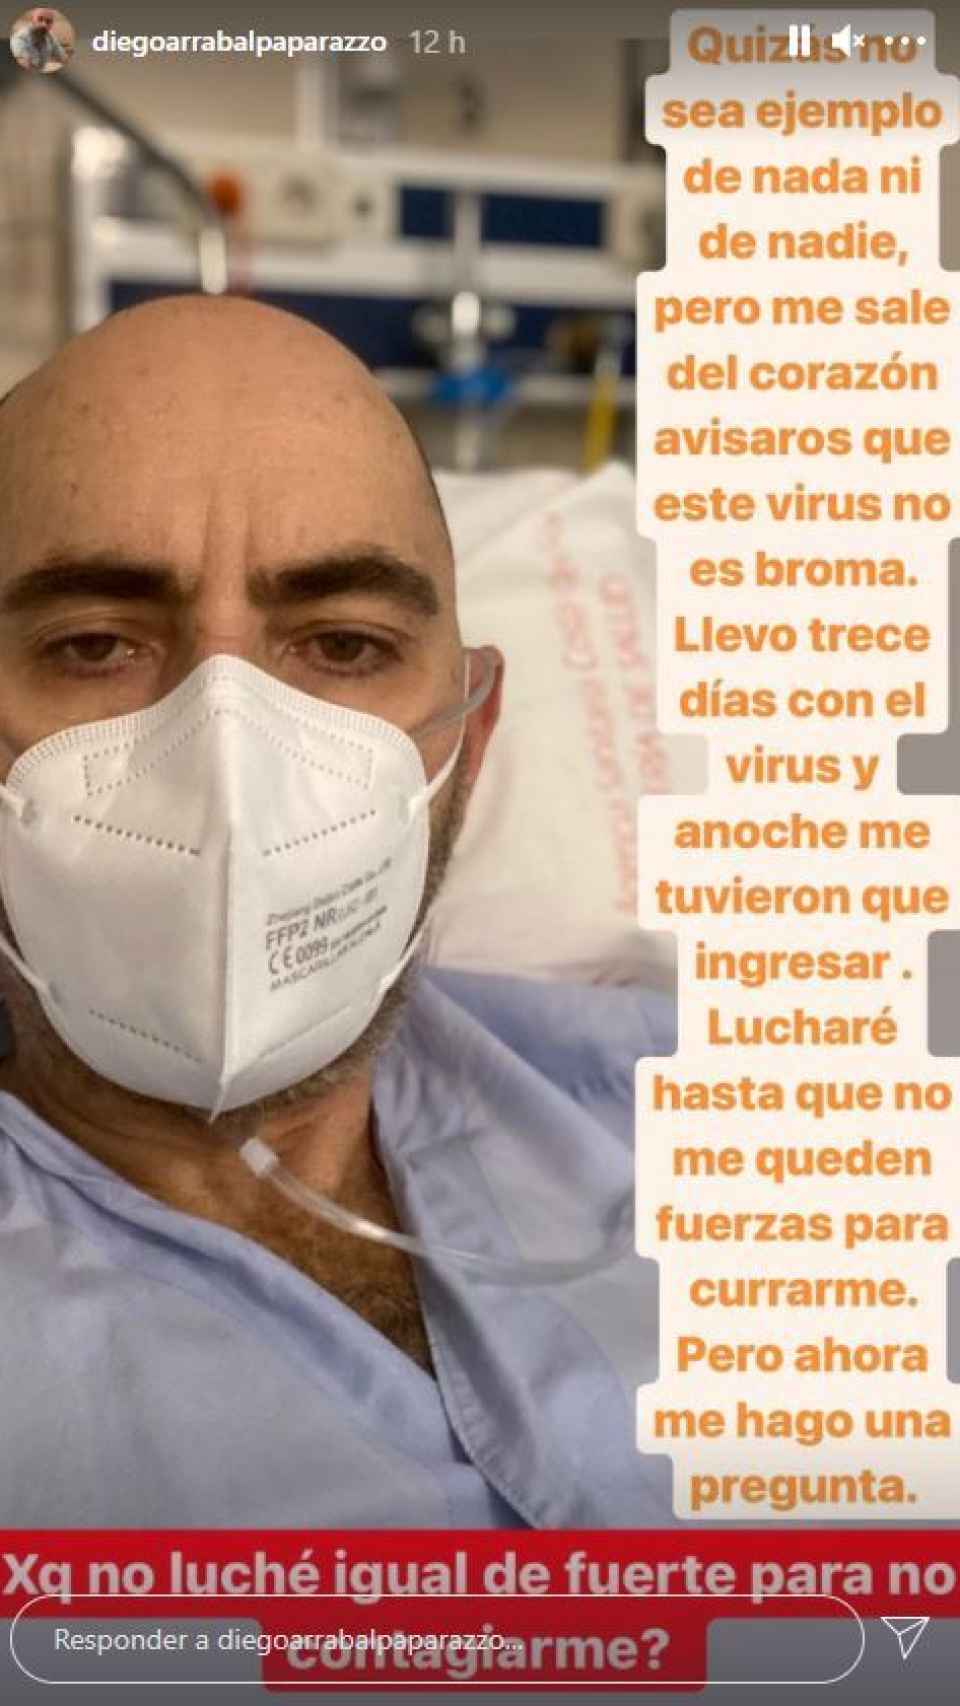 La imagen de Diego en el hospital.